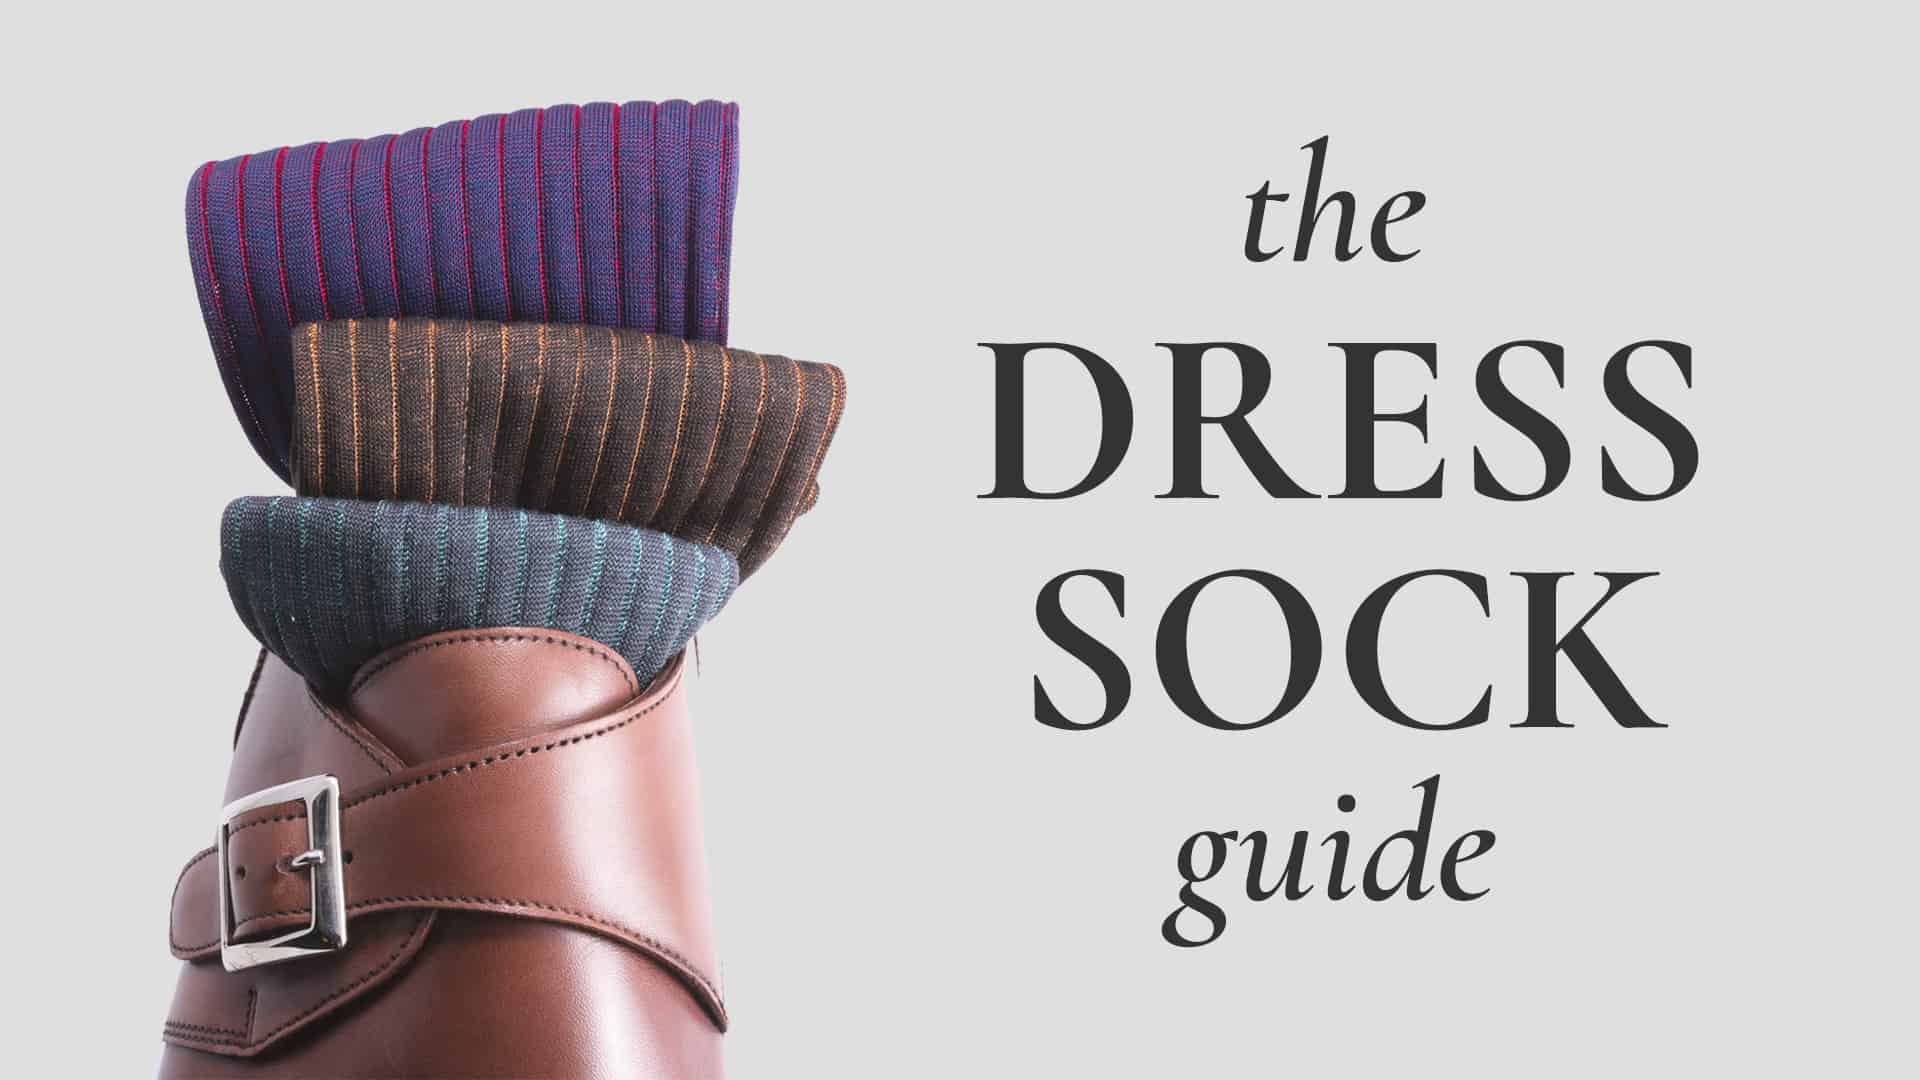 Kolors Cotton Spandex Men's Fancy Formal Socks, Size: Free